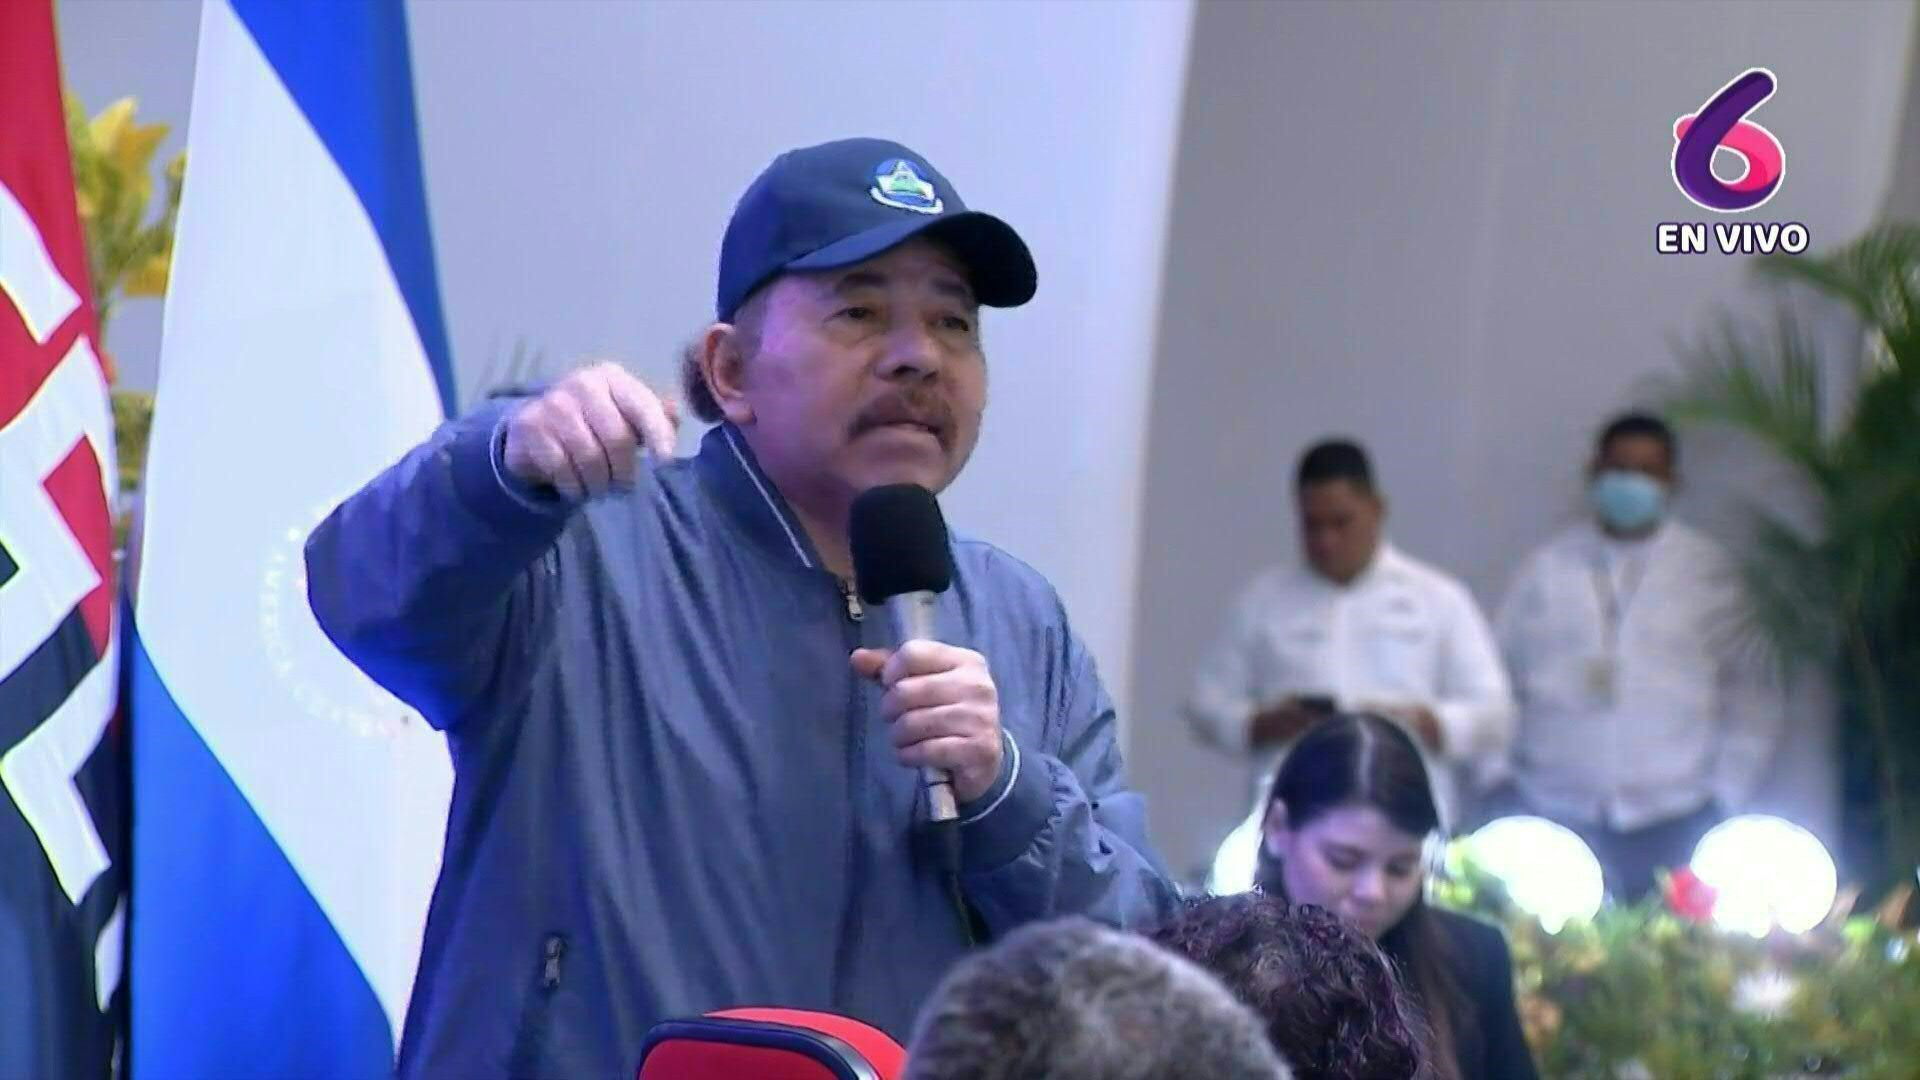 Daniel Ortega reclamó por la retención de un avión venezolano y de su tripulación a pedido de Estados Unidos y exigió su inmediata liberación